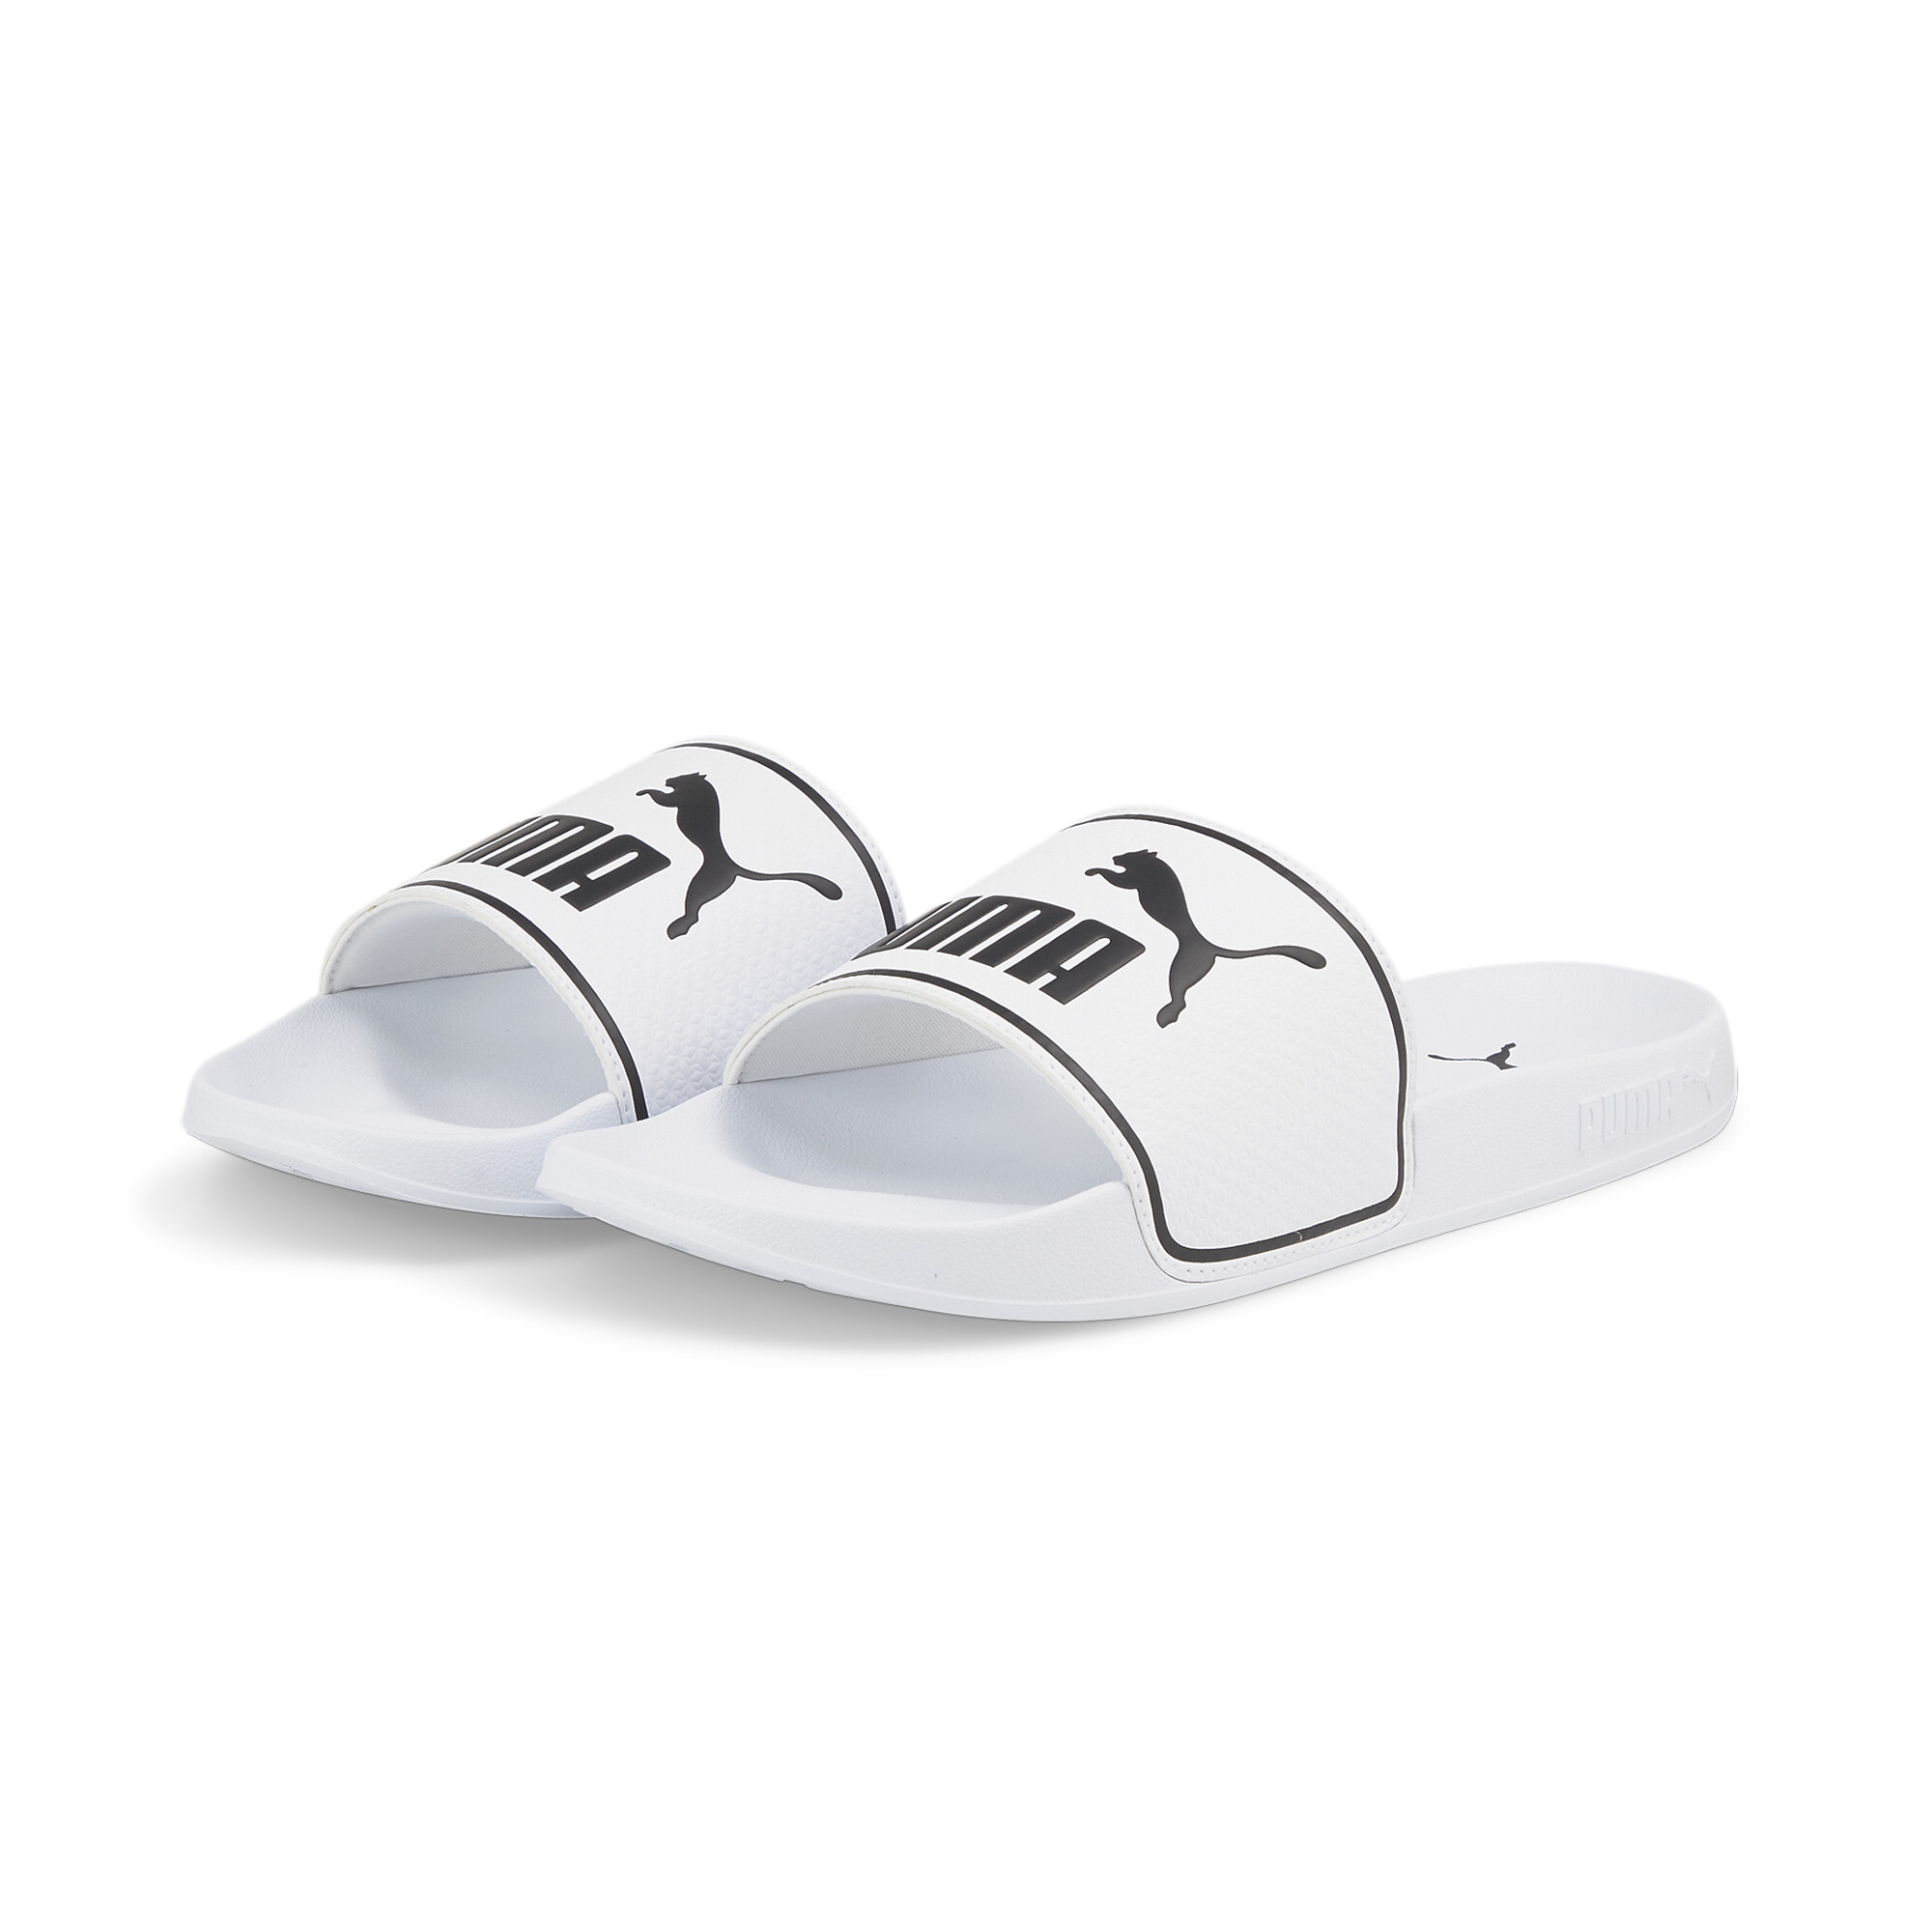 Men's PUMA Leadcat 2.0 Sandals In White, Size EU 37